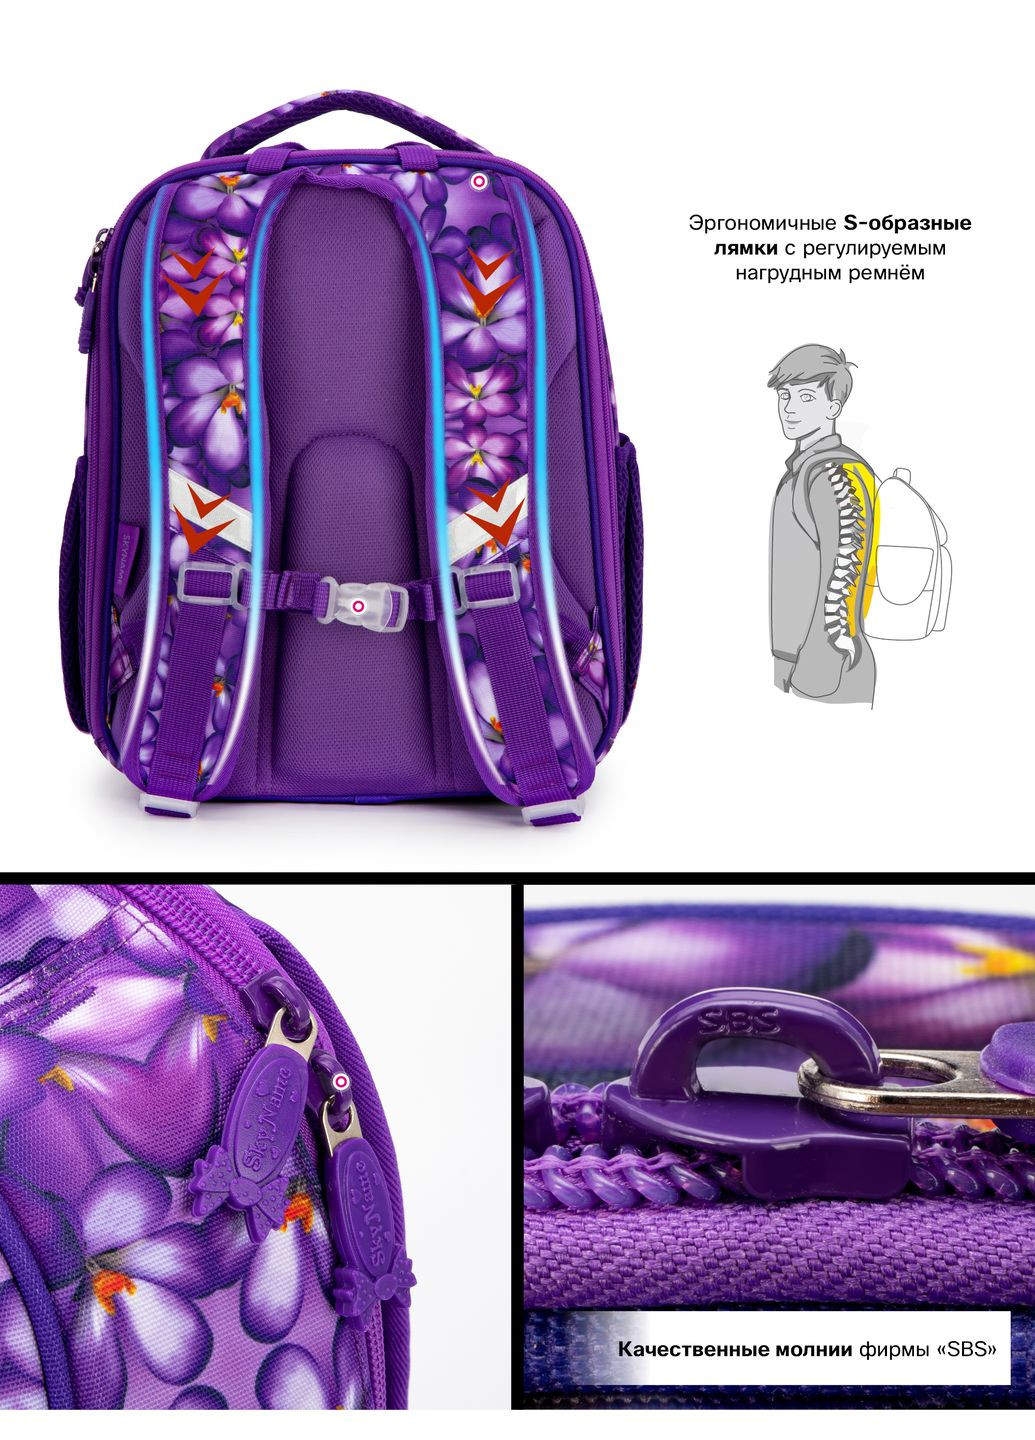 Школьный ортопедический рюкзак (ранец) сиреневый для девочки /SkyName с Пандой 36х30х16 см для начальной школы (5025) Winner (293815070)